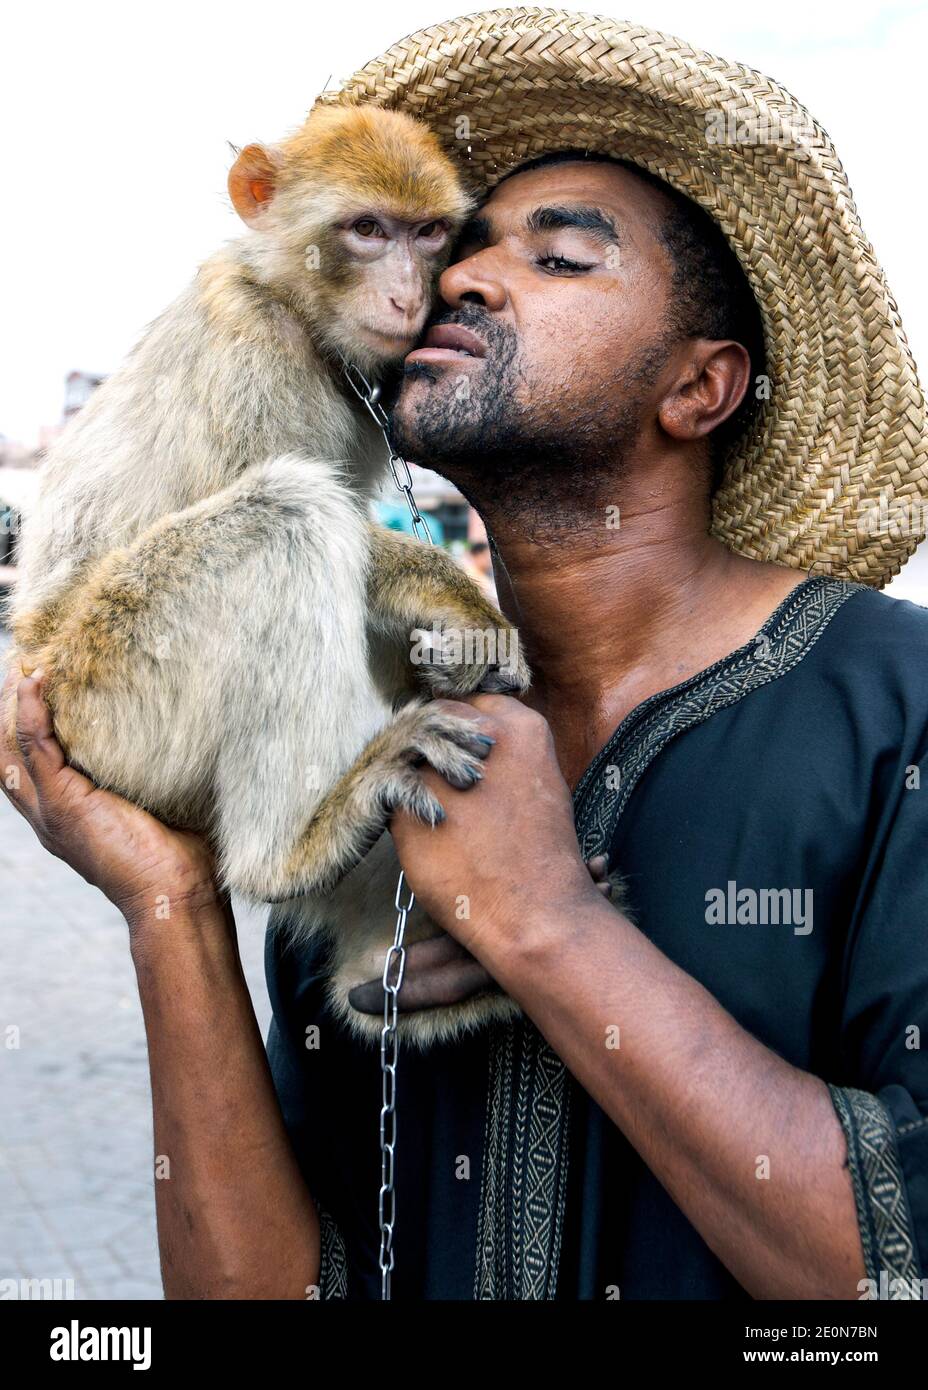 Un uomo posa per una fotografia con la sua scimmia a Djemaa el-Fna, la piazza principale della medina di Marrakech in Marocco. Foto Stock